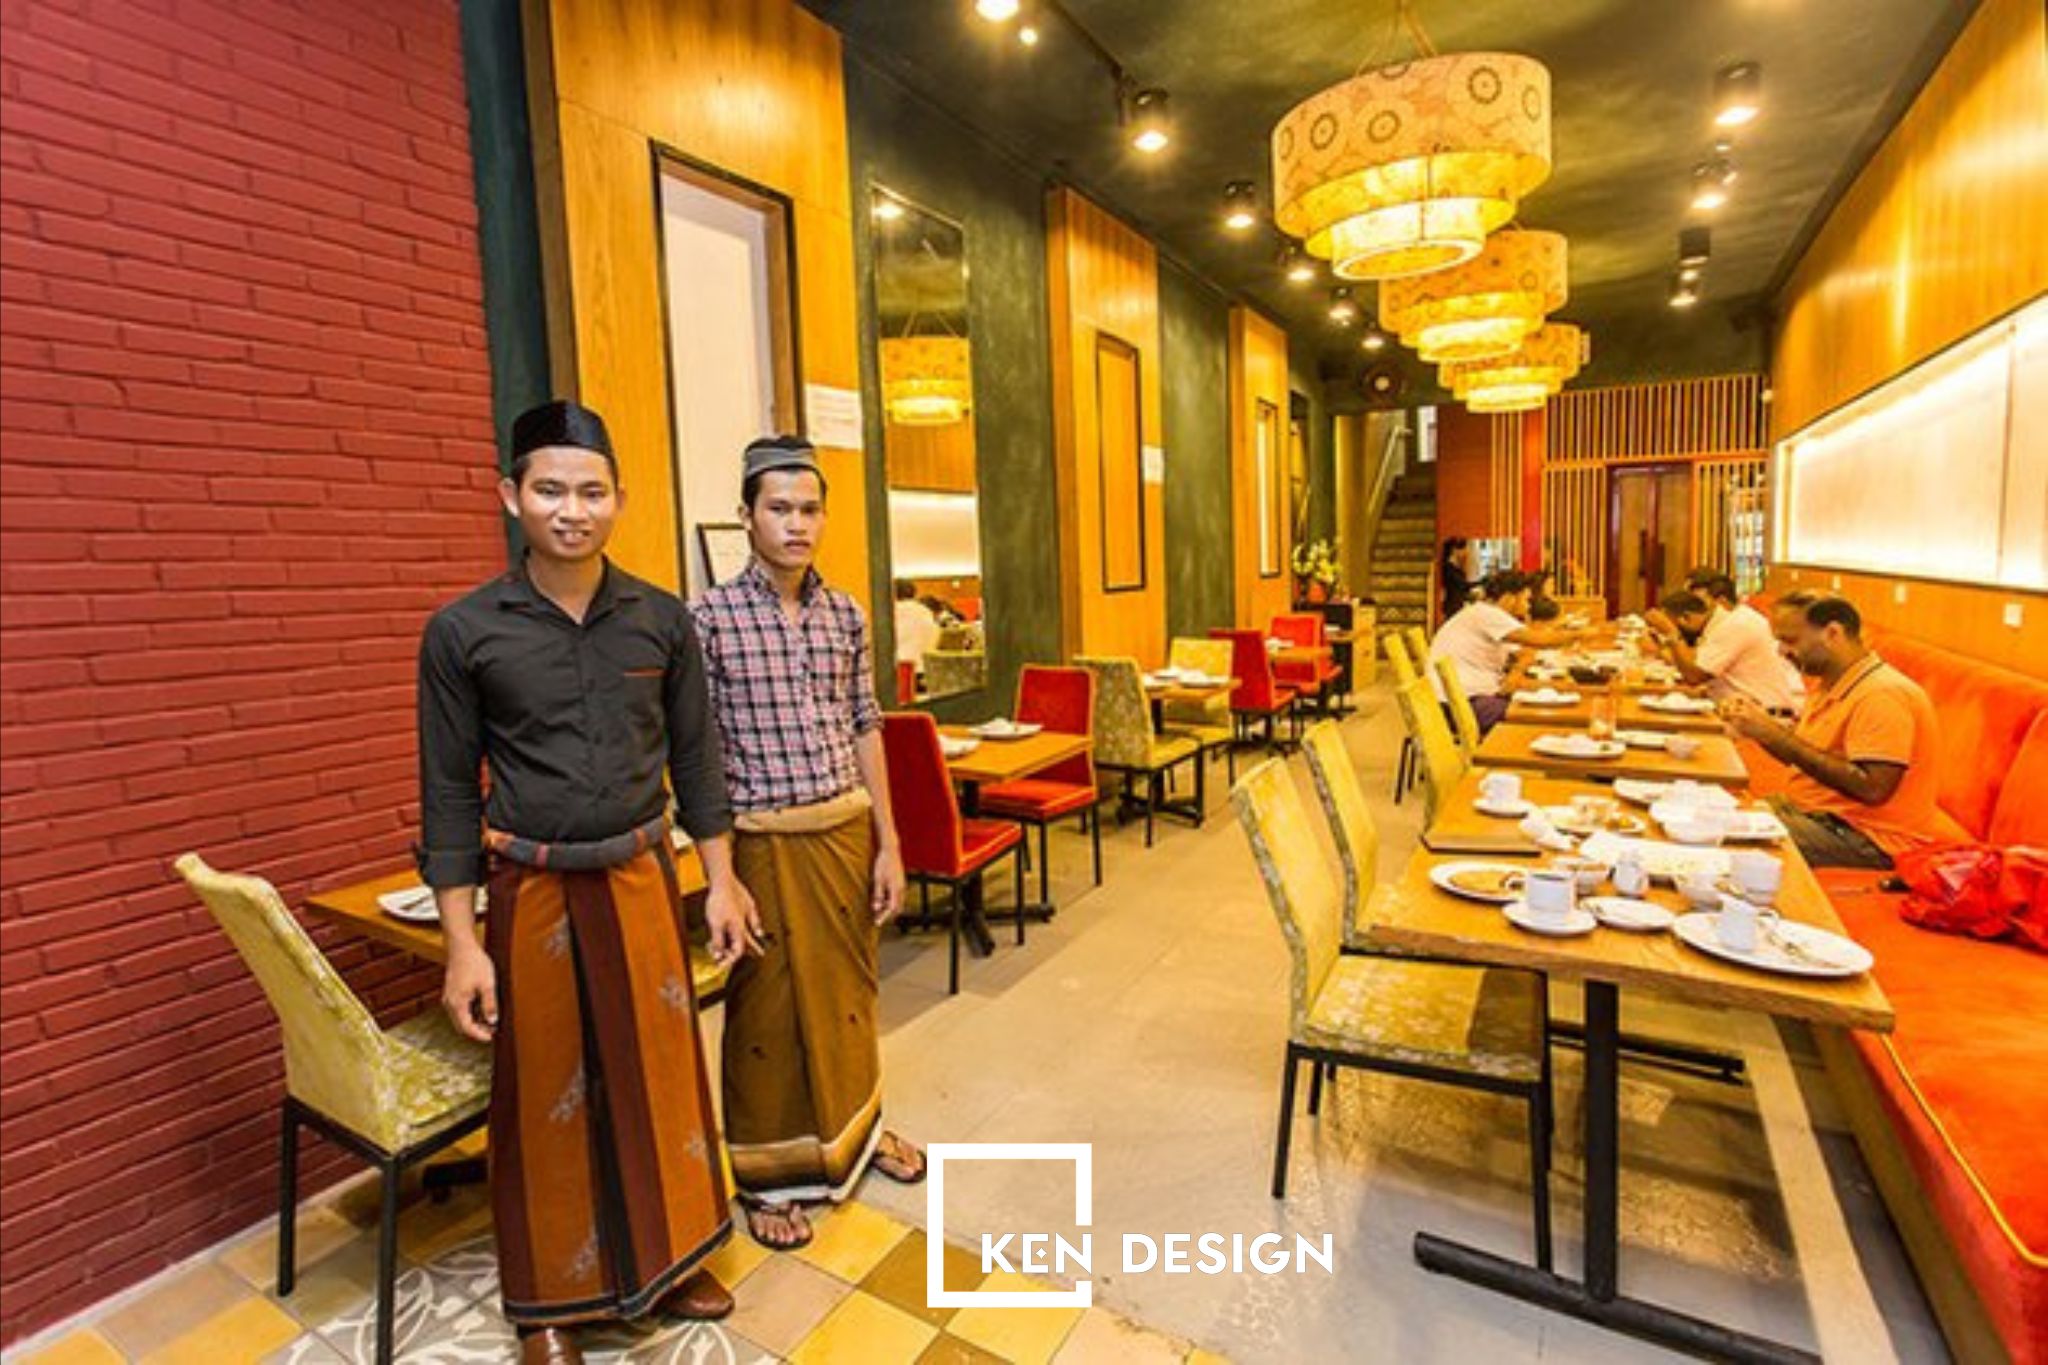 thiết kế nhà hàng Halal Saigon